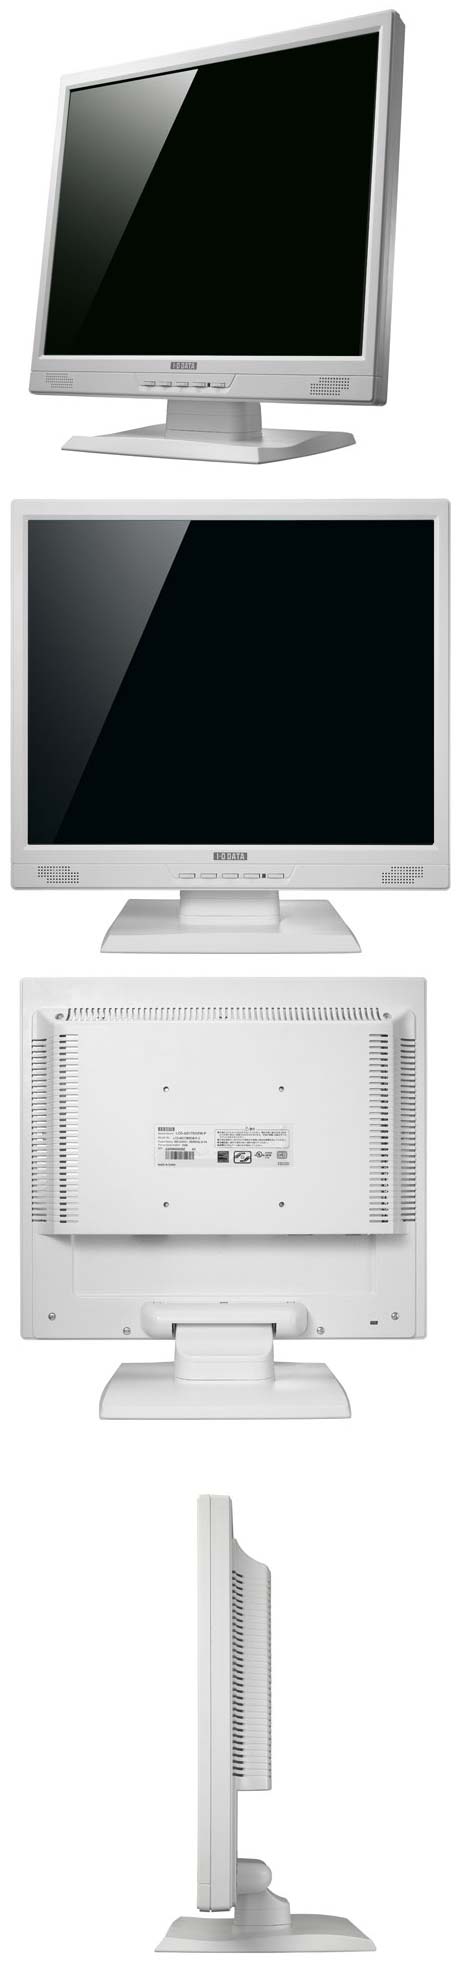 Монитор LCD-AD171EW-P от I-O Data